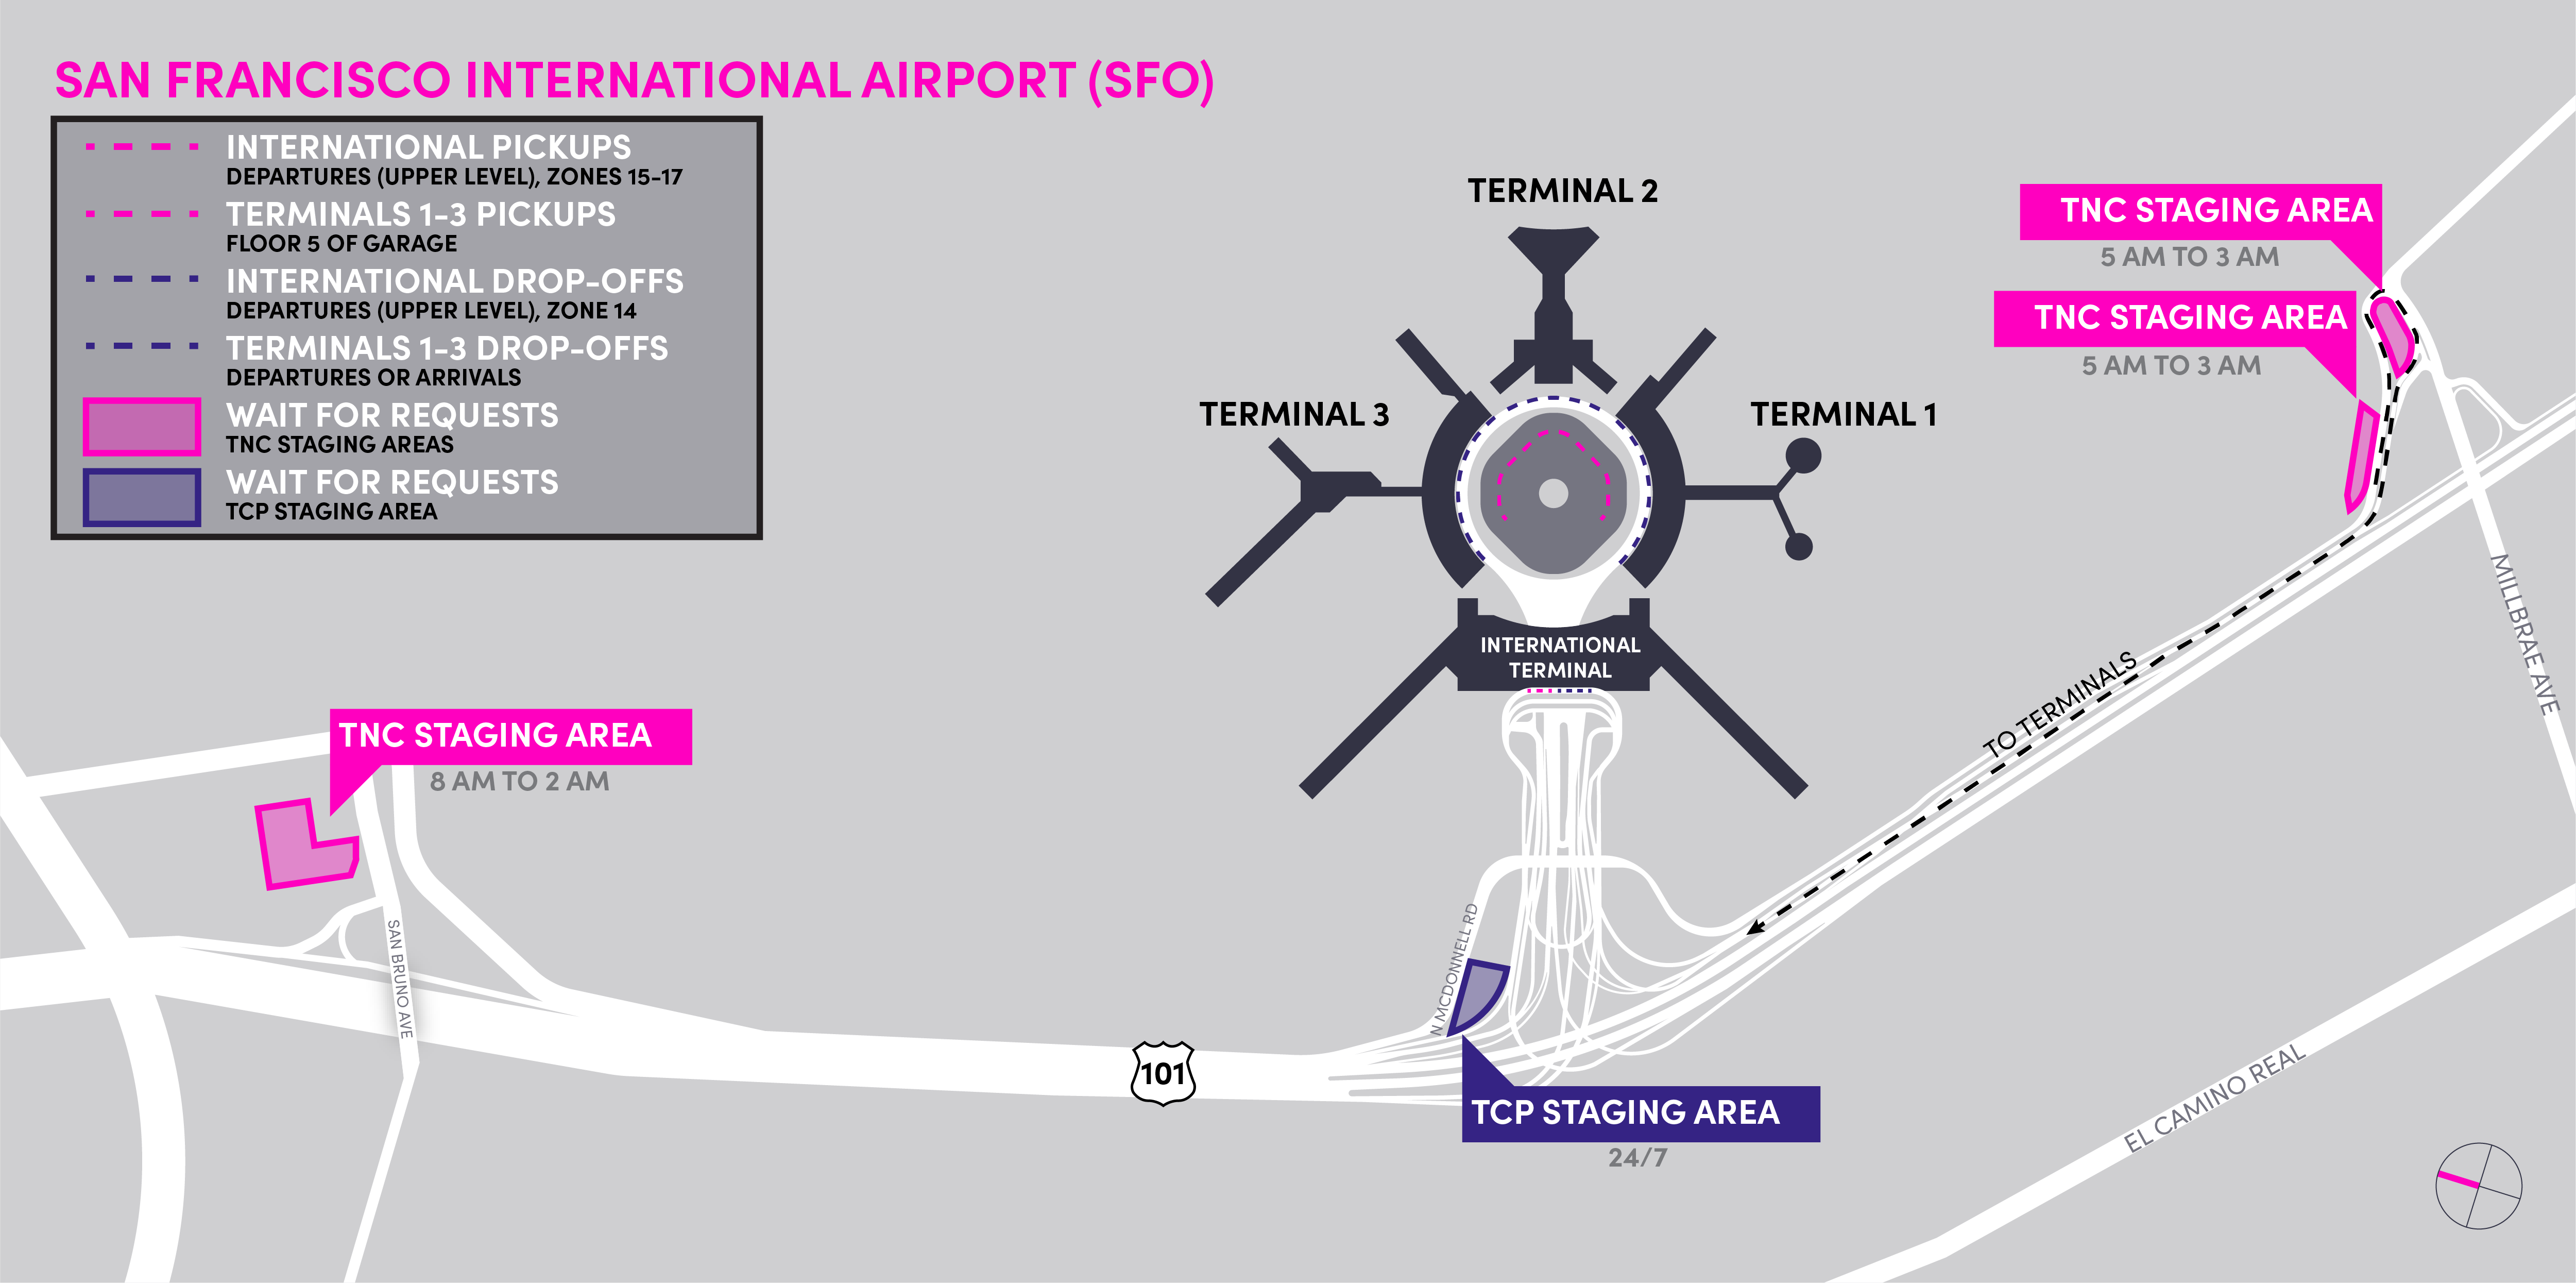 Mapa das áreas de espera da TNC e TCP no San Francisco International Airport